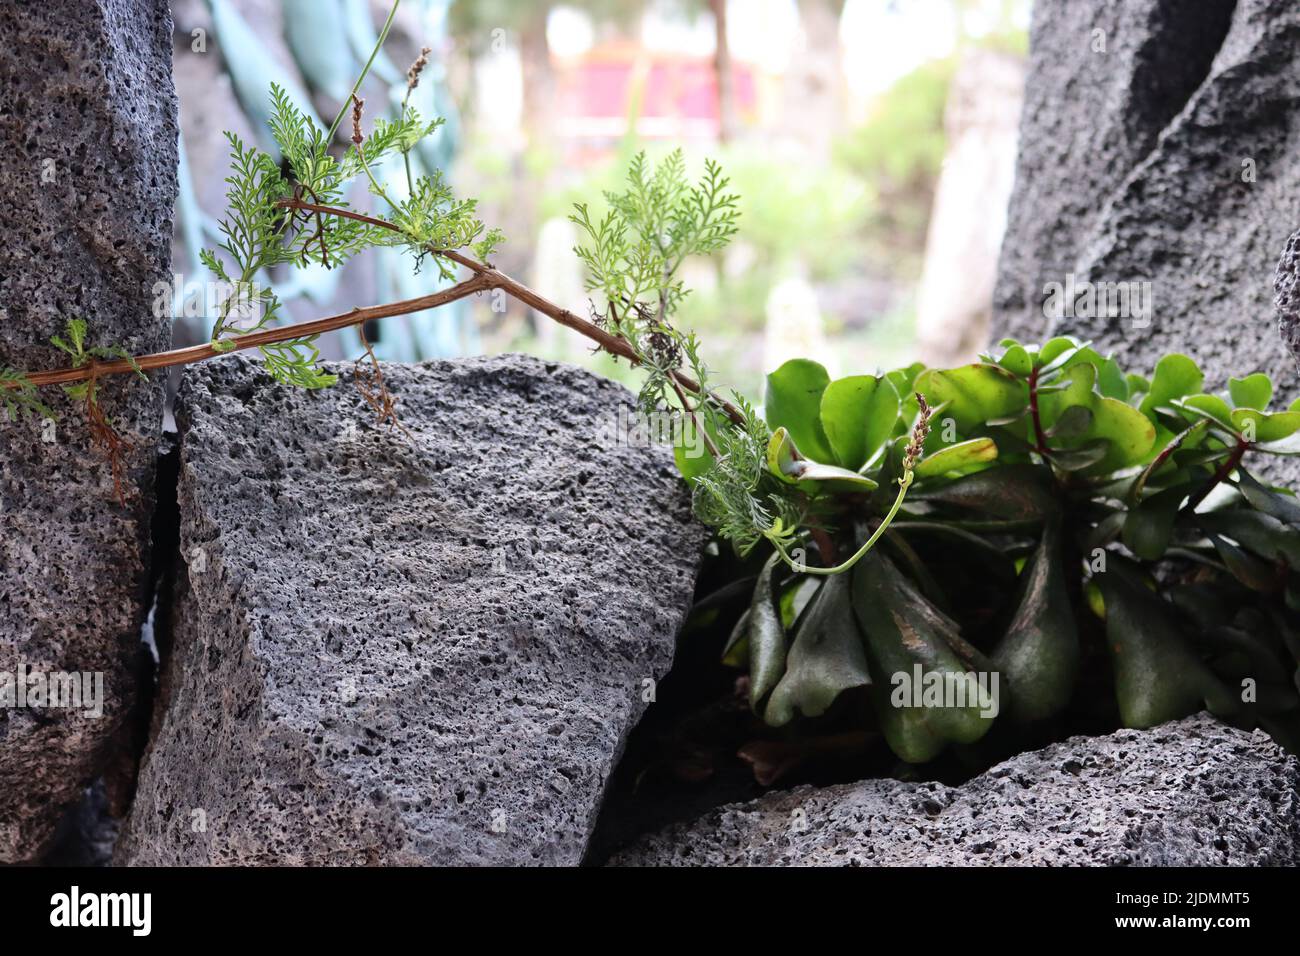 Der Kontrast von zarten Pflanzen, die in brutalem vulkanischem Gestein wachsen. Parque Antonio Gómez, La Palma, Santa Cruz, Kanarische Inseln, Spanien Stockfoto